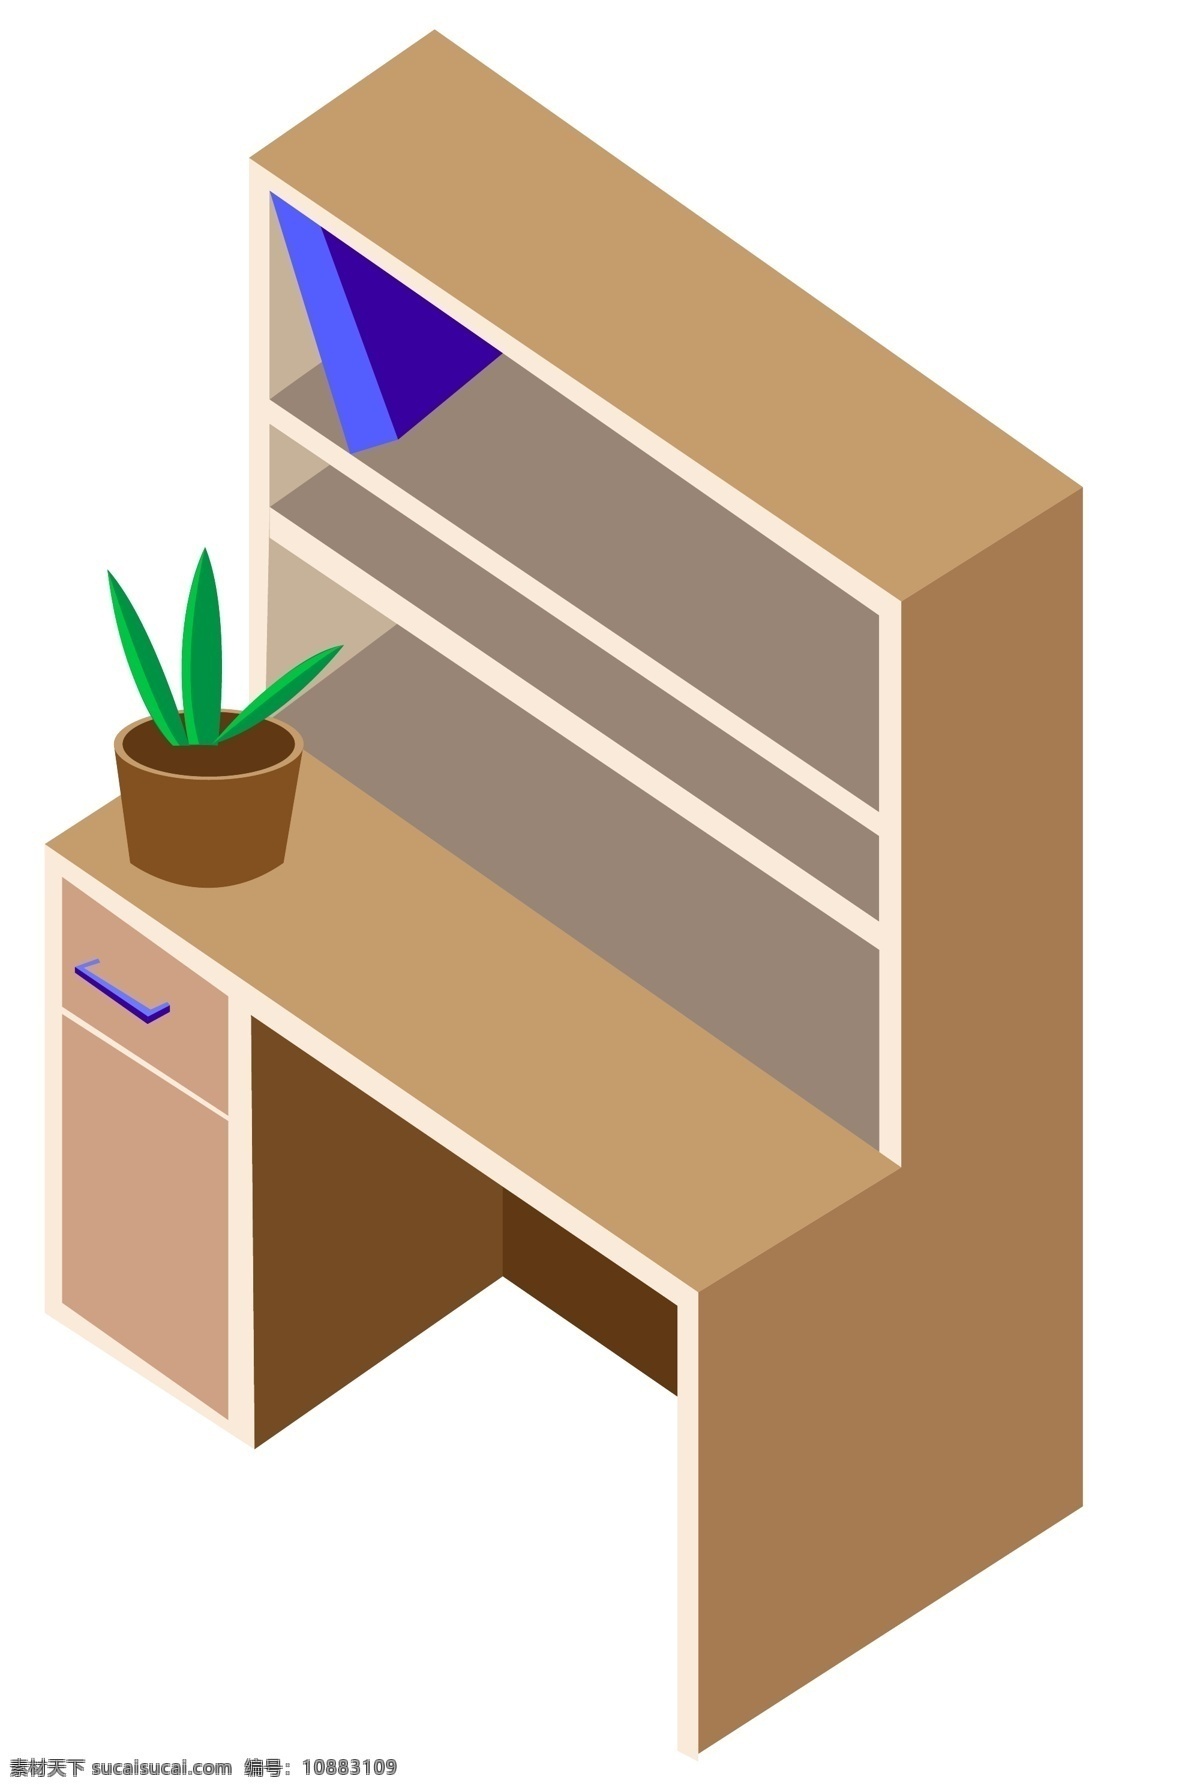 d 木质 书架 手绘 插画 2.5d书架 木质书架 蓝色的书籍 绿色植物盆栽 手绘书架 卡通书架 室内家具书架